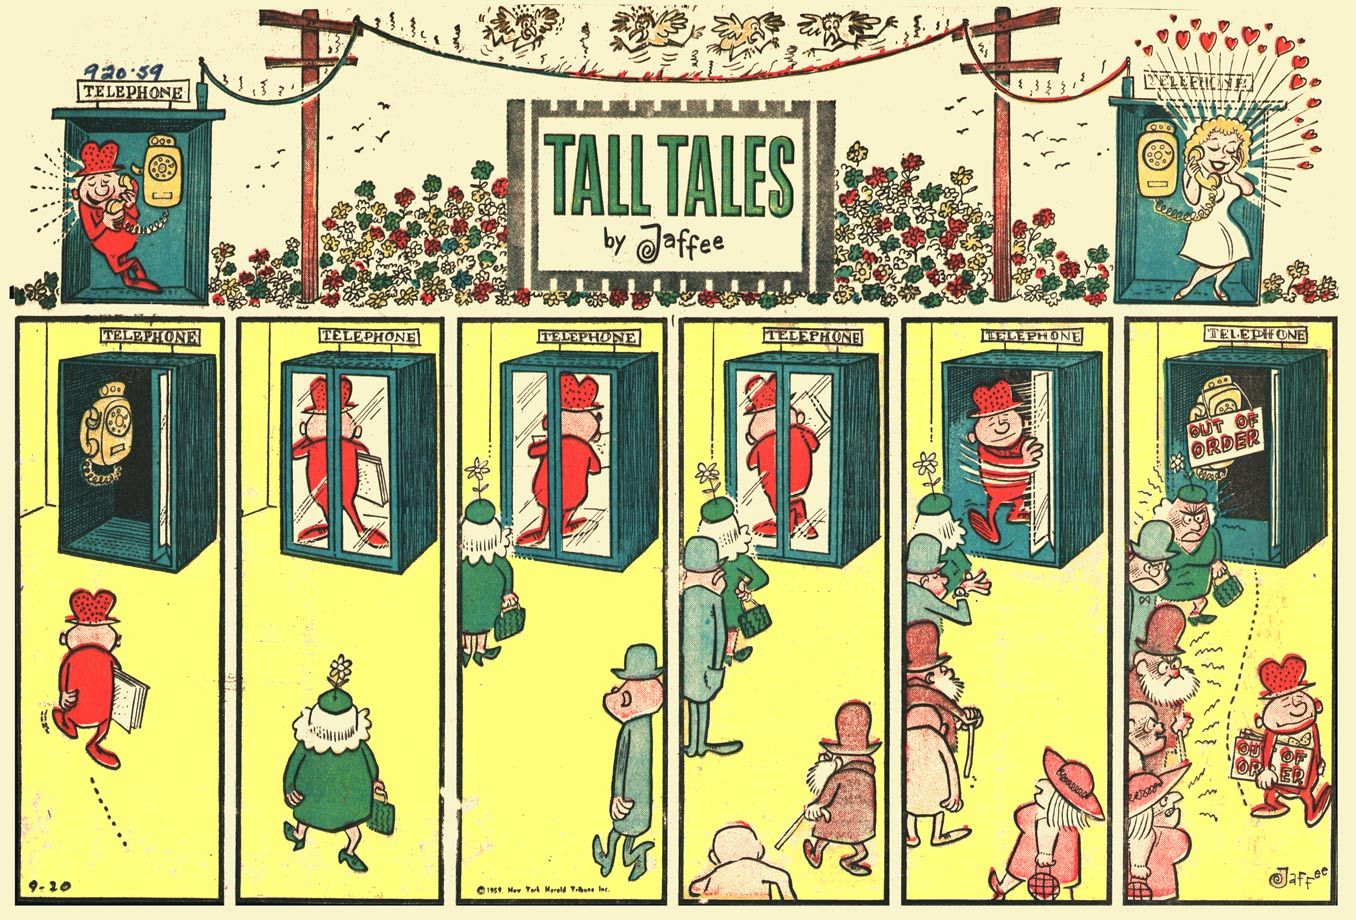 Al Jaffee's Tall Tales comic strip